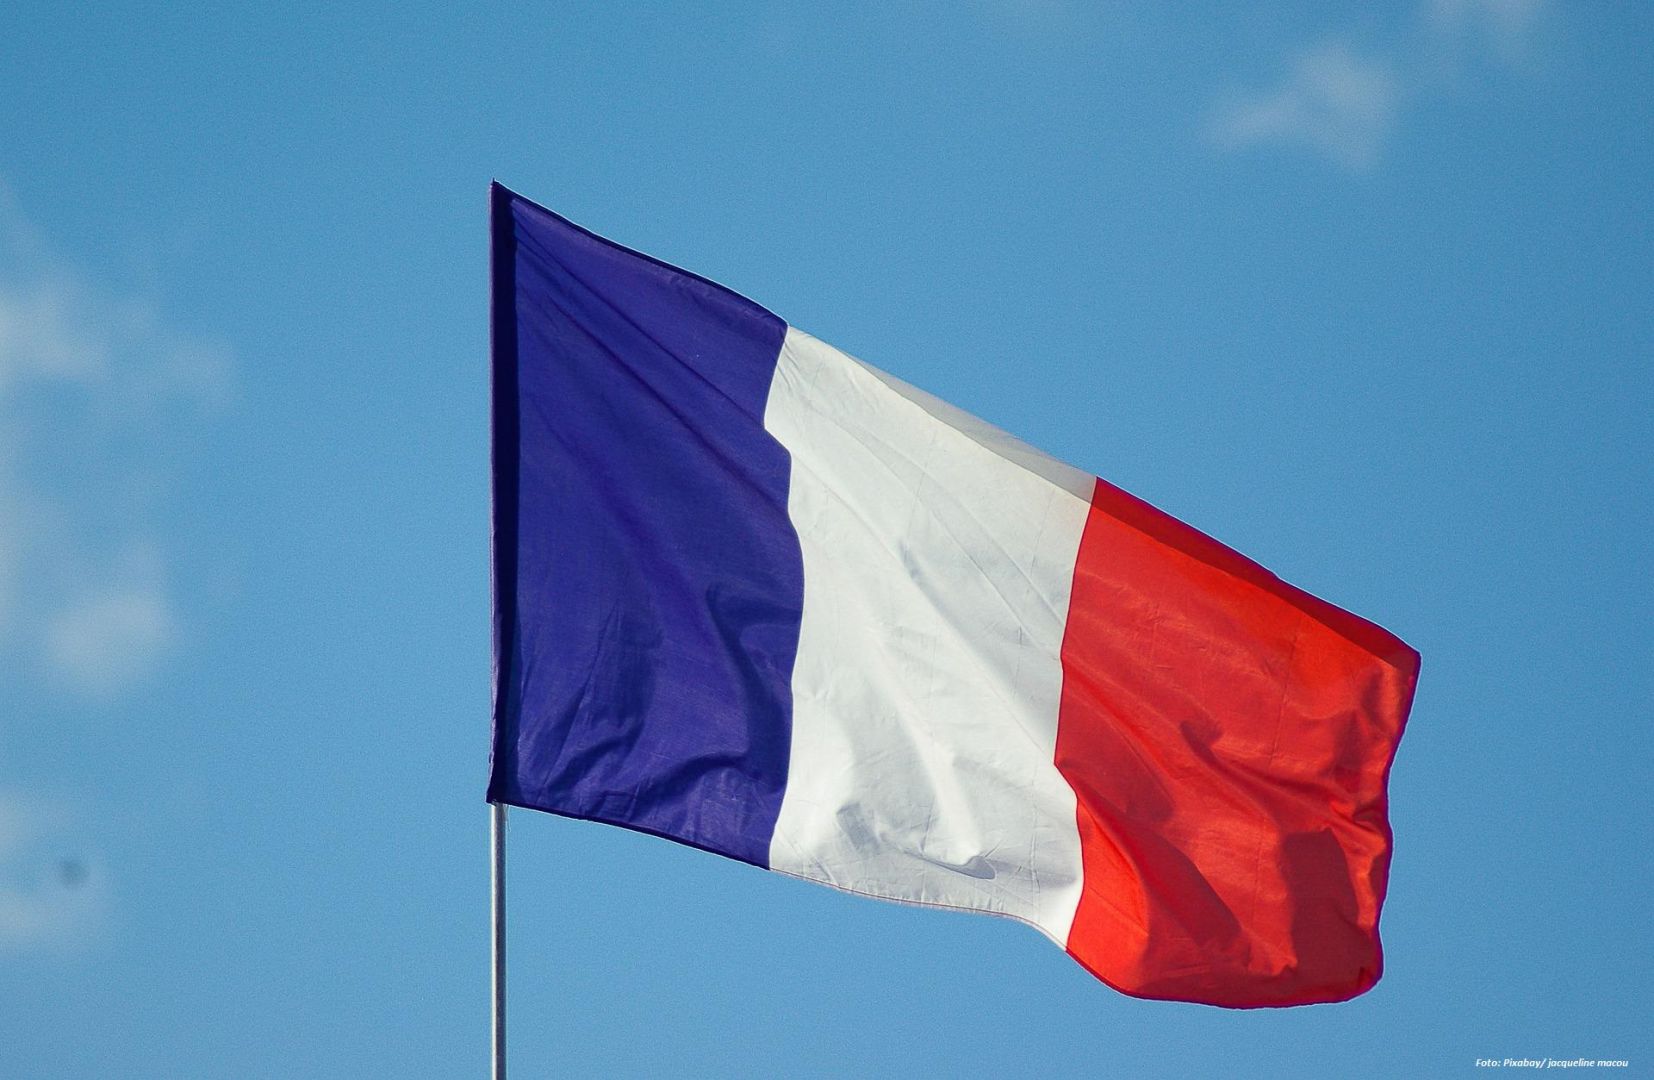 Frankreich investiert 350 Millionen Euro in die Modernisierung der Luftraumüberwachung